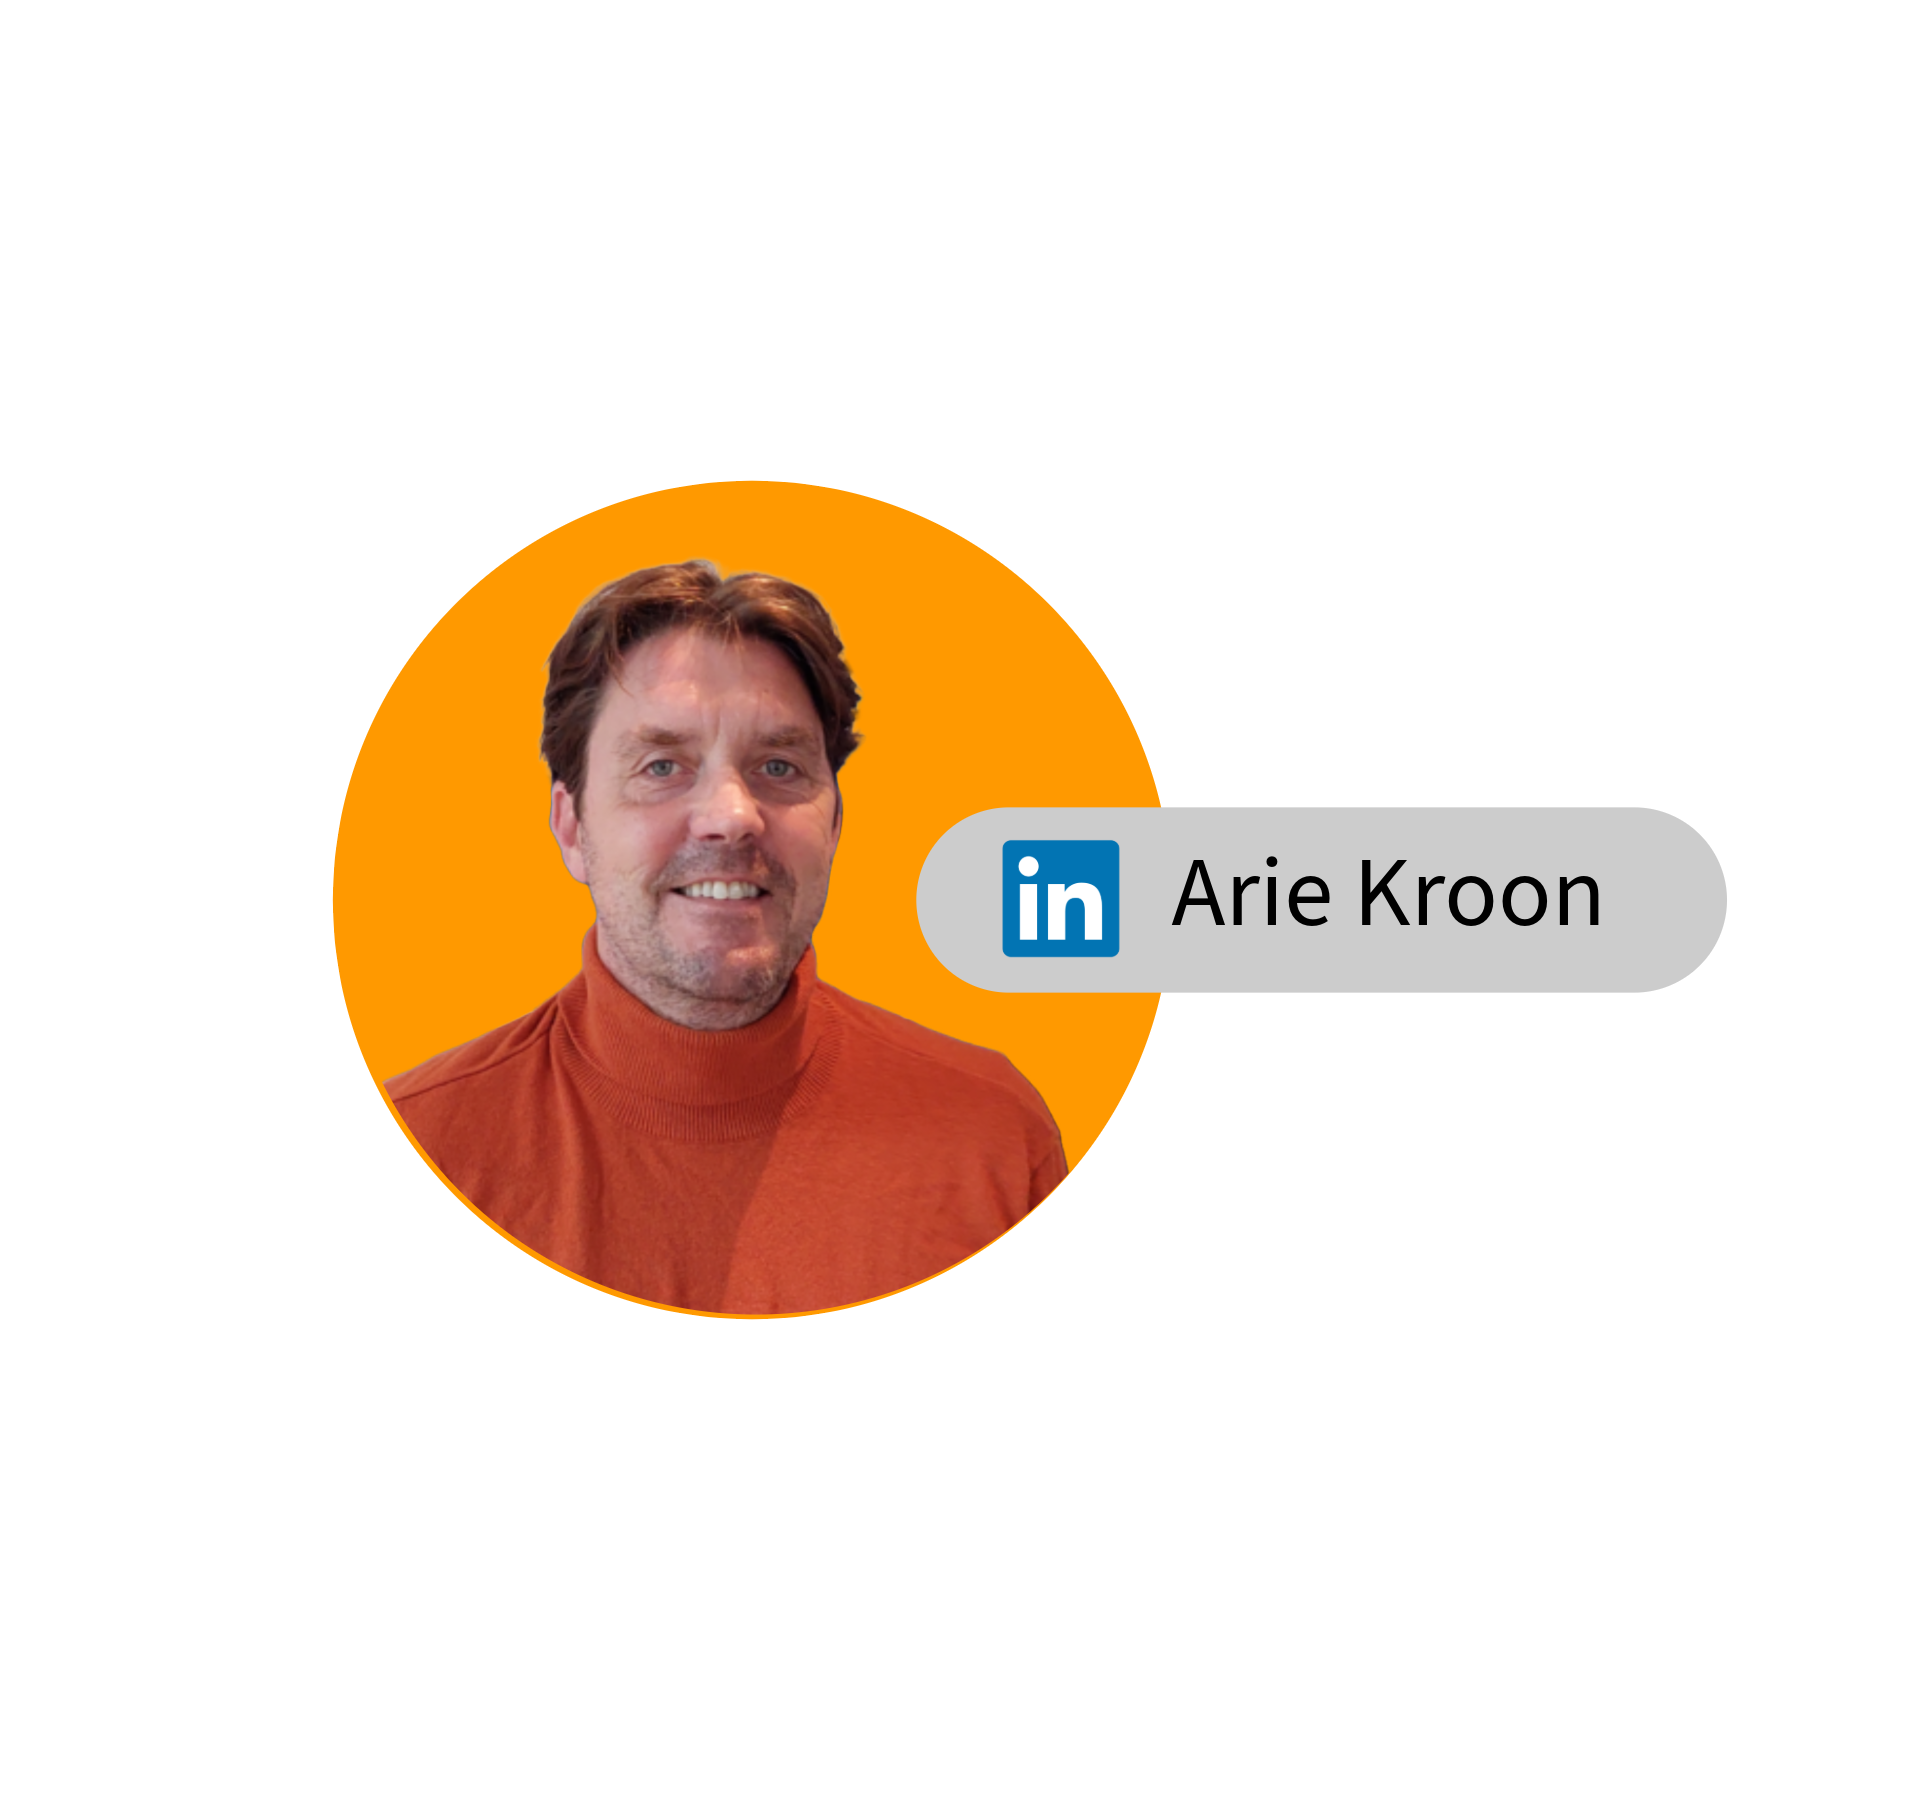 Arie Kroon - LinkedIn volgen